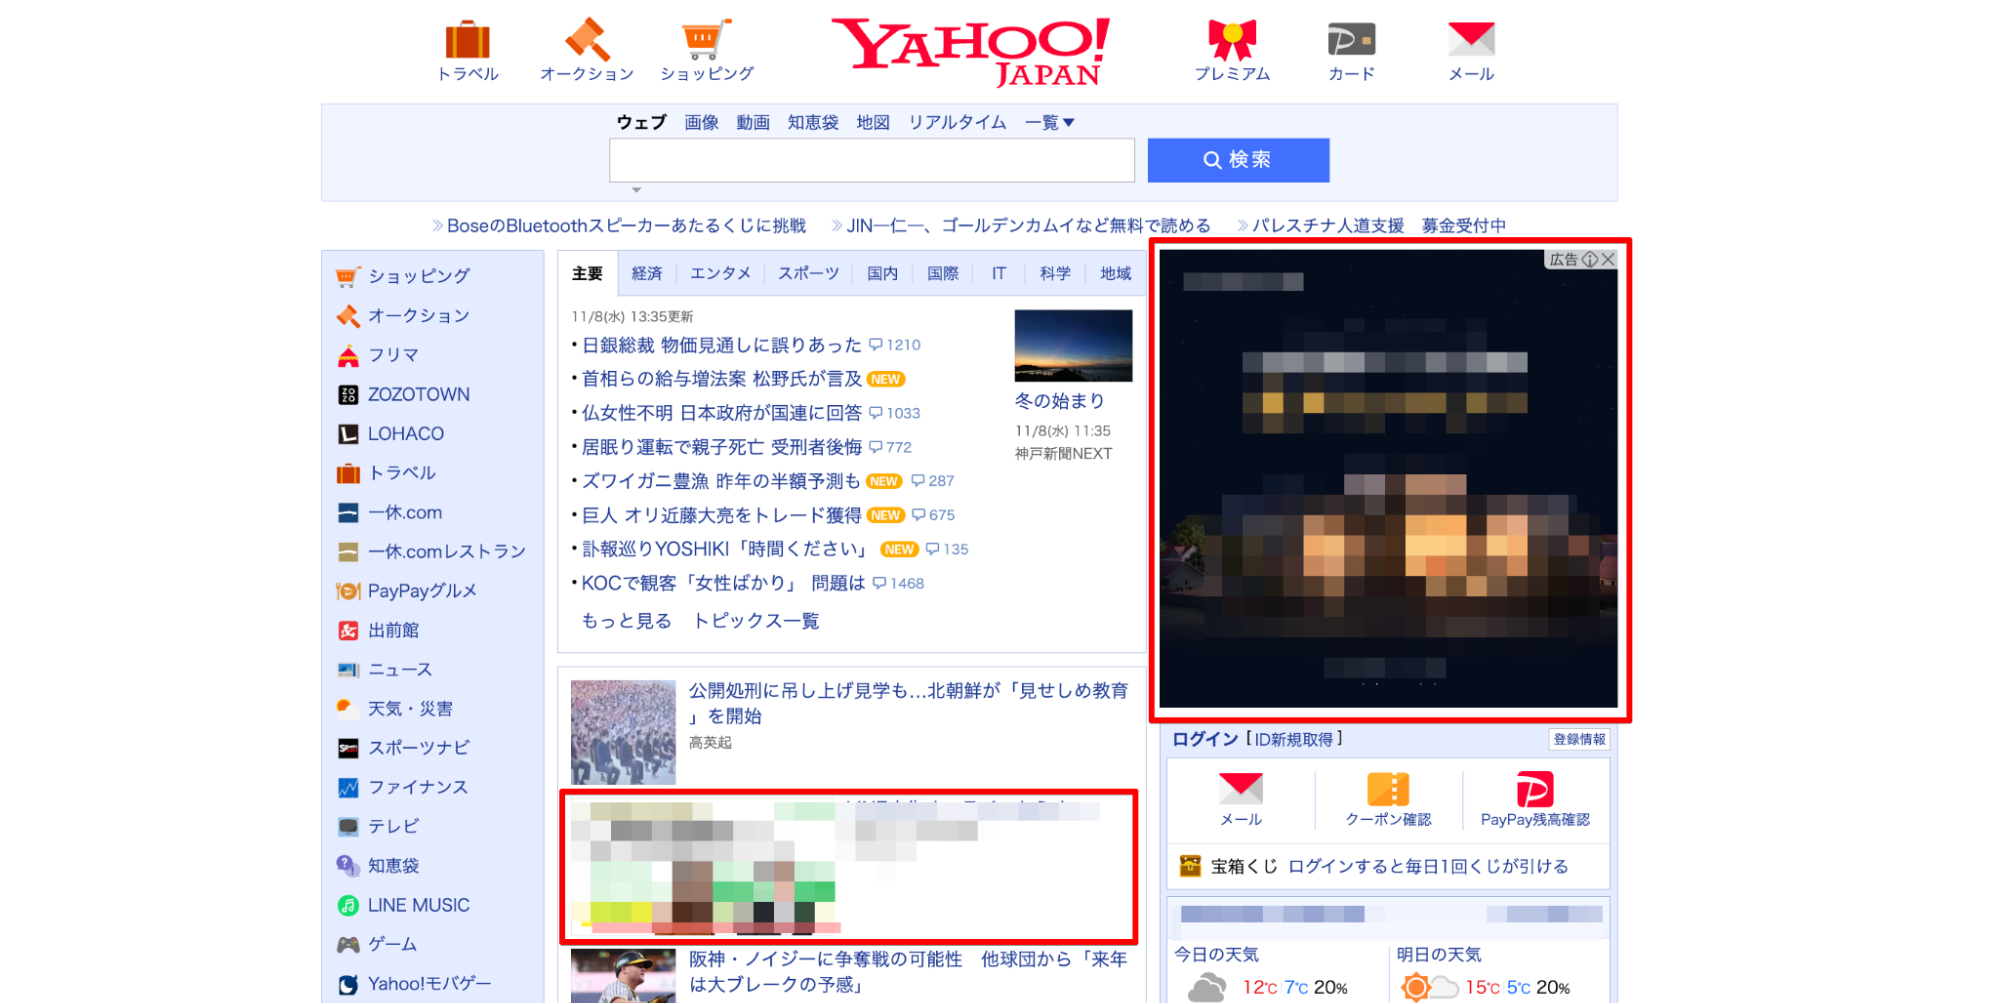 Yahoo!広告のディスプレイ広告（運用型）の実際の掲載画面